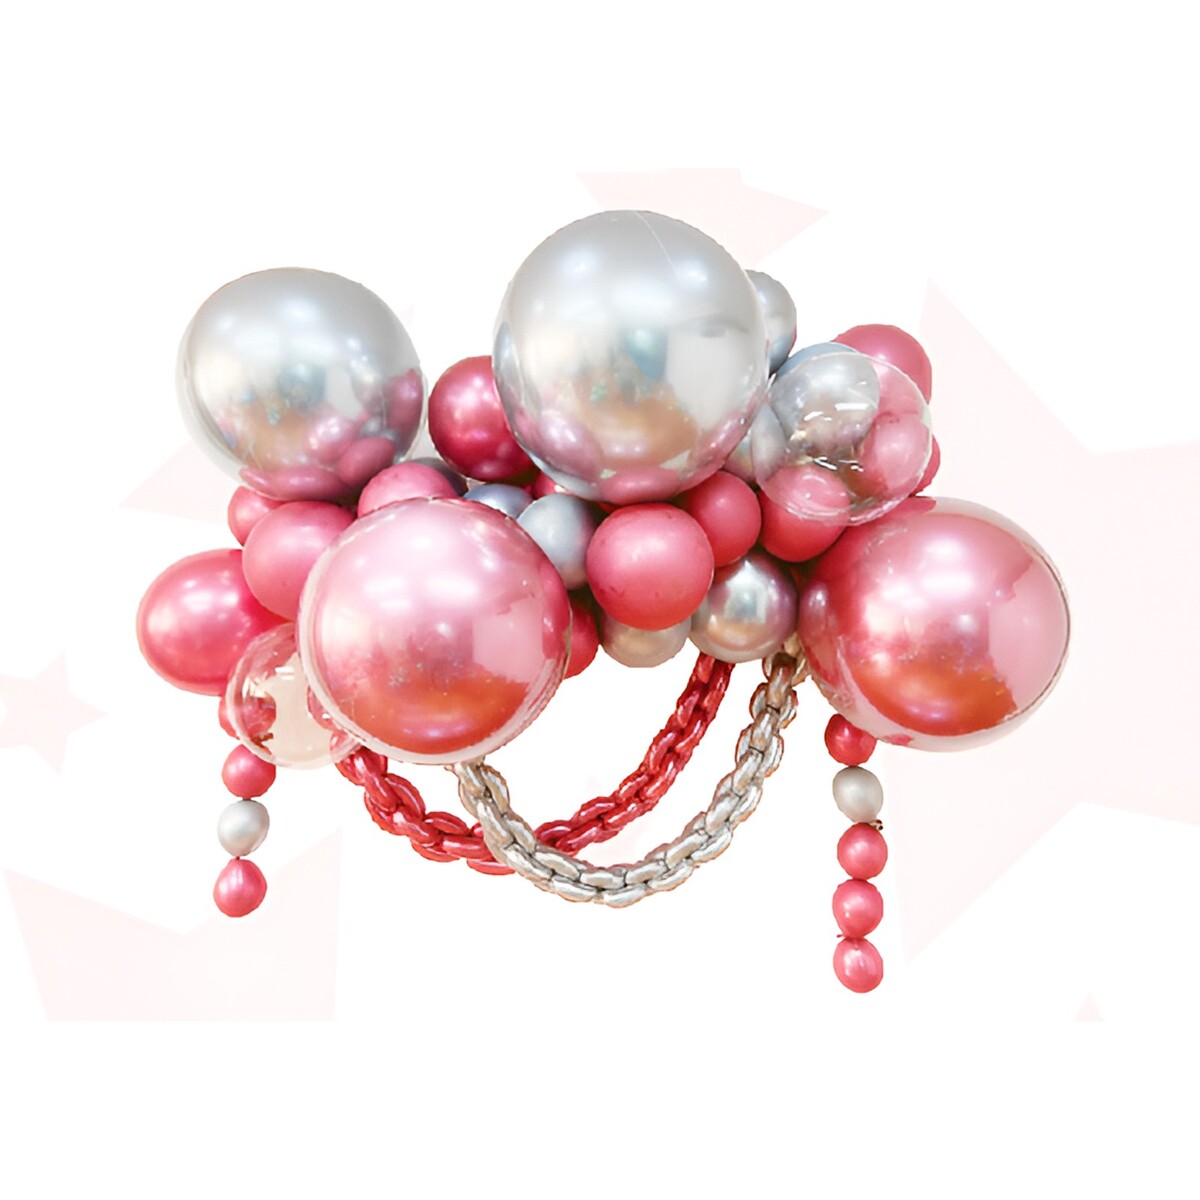 Набор для создания композиций из воздушных шаров, набор 52 шт., серебро, розовый набор для создания украшений